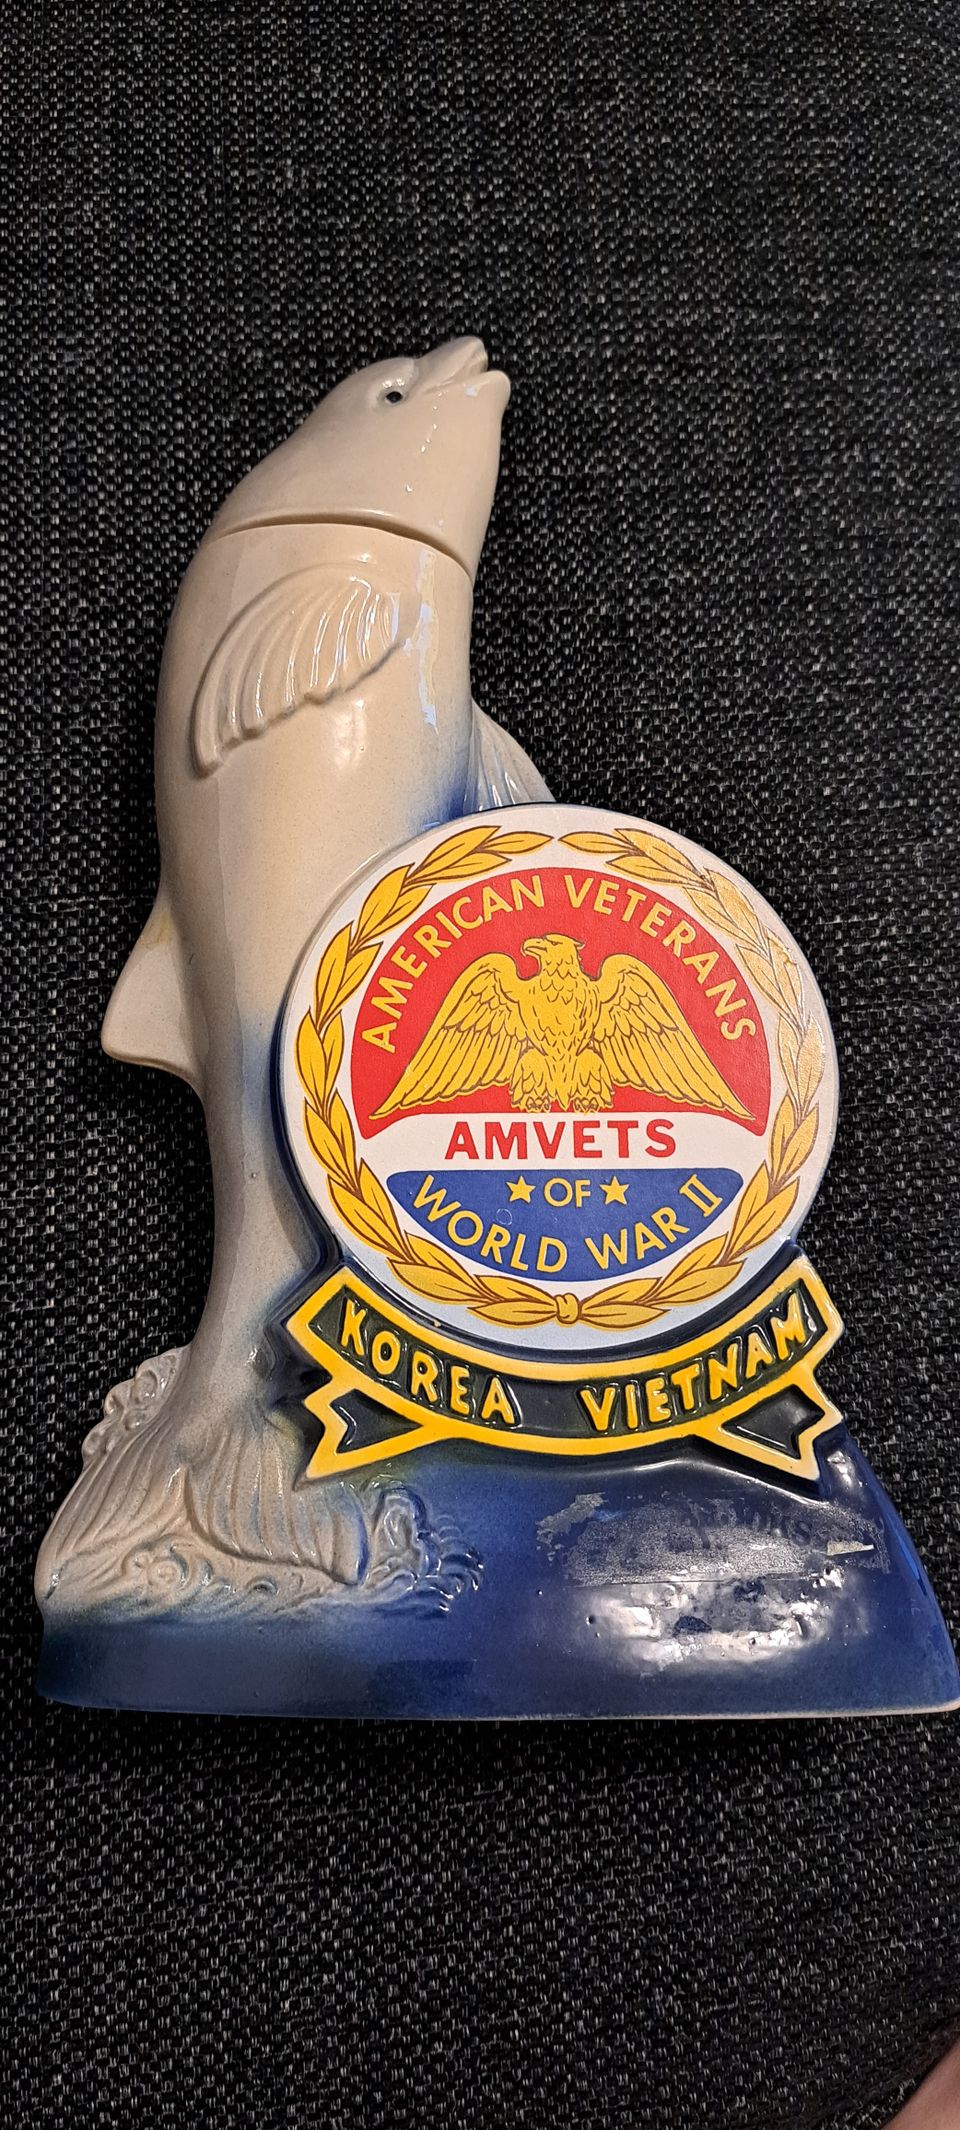 Keraaminen koriste/pullo American veterans